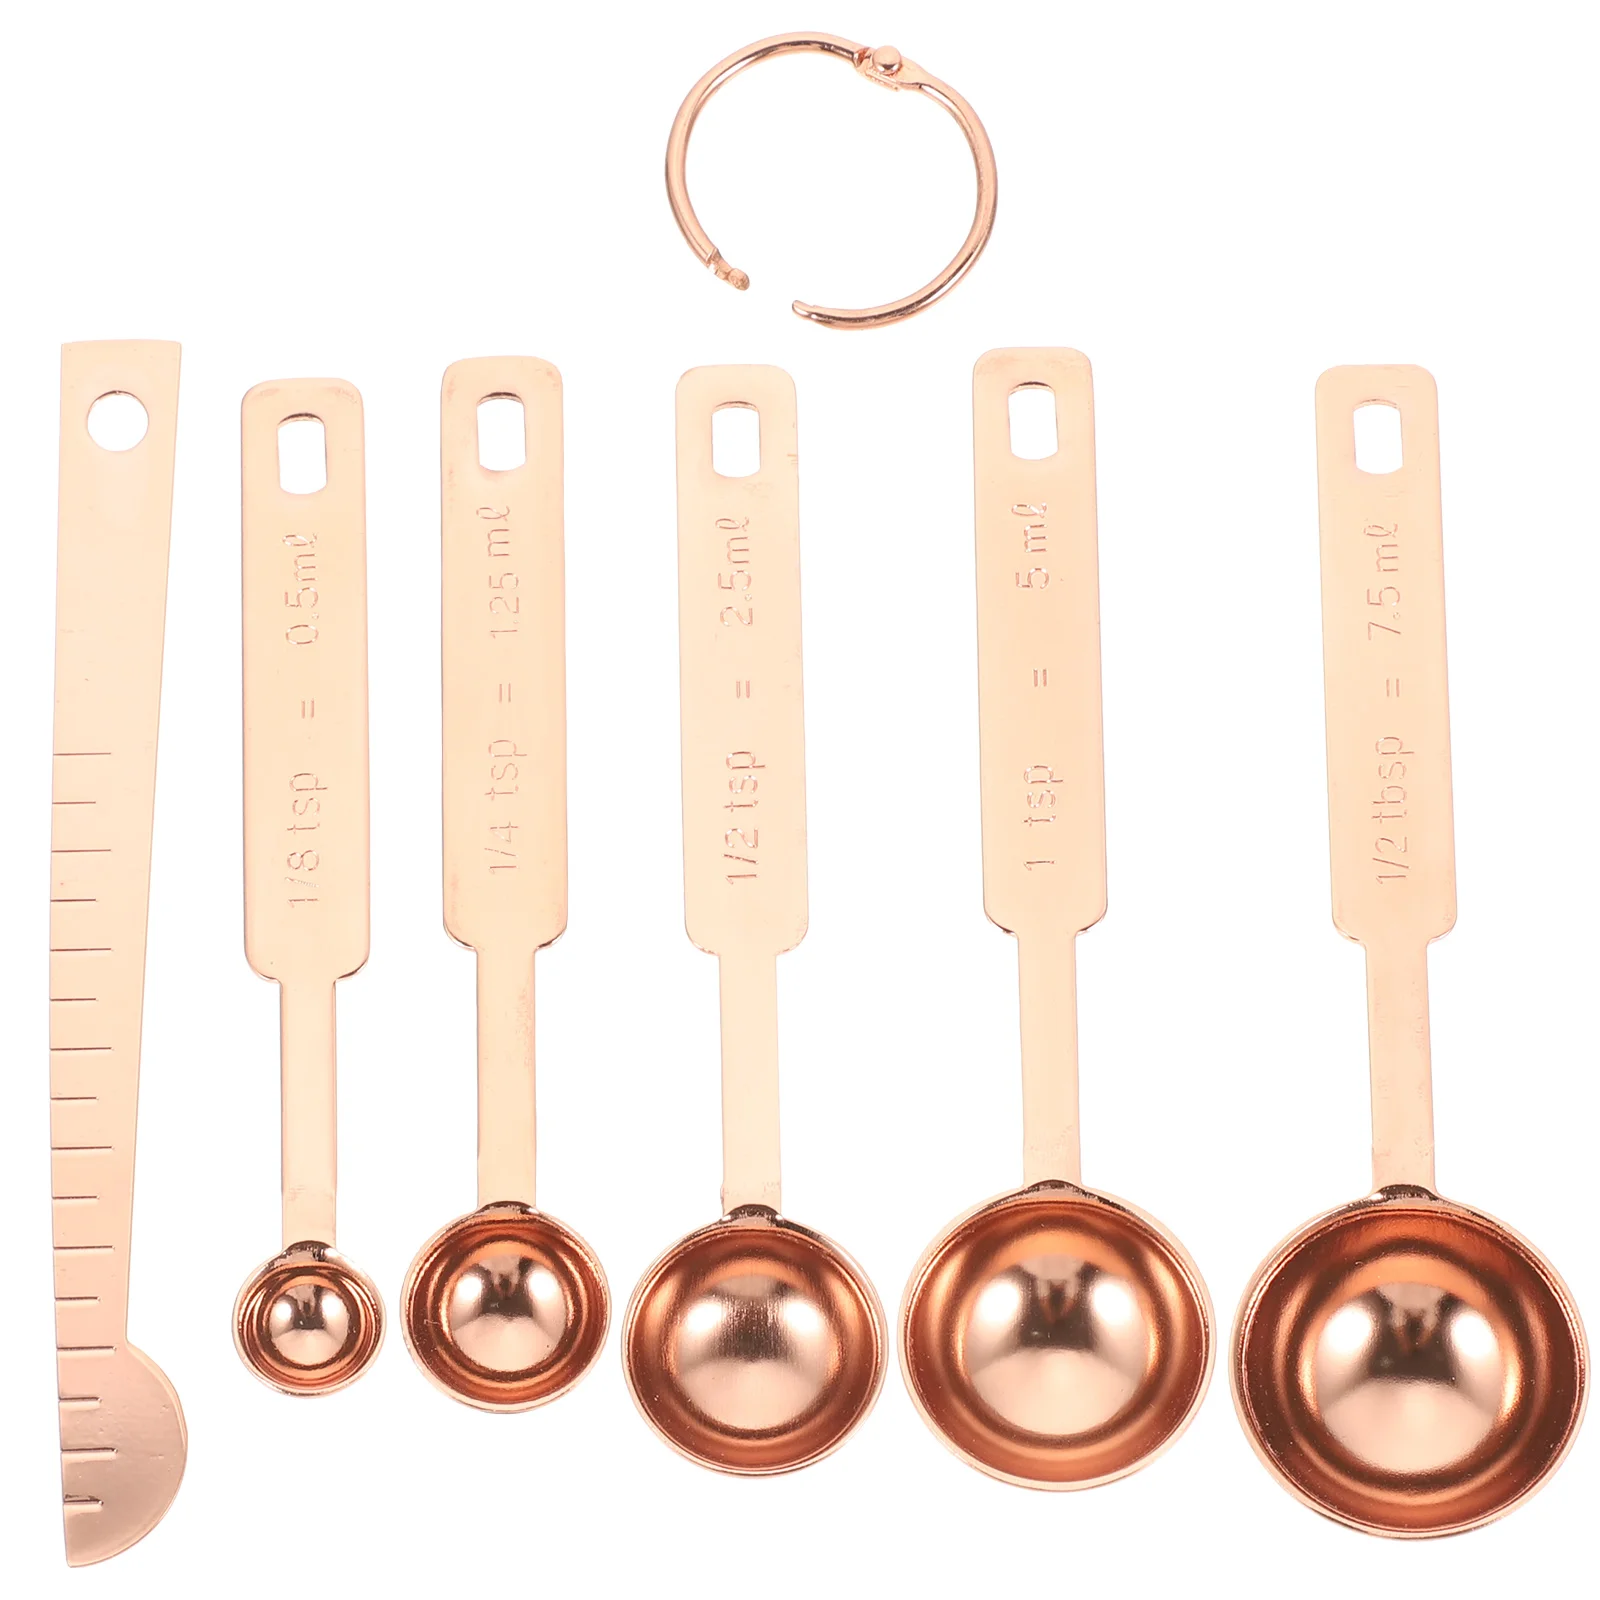 

Stainless Steel Measuring Spoon Spoons Tablespoon Cup Teaspoon Measure Set Teaspoons Kitchen Metal Ice Cream Scoop